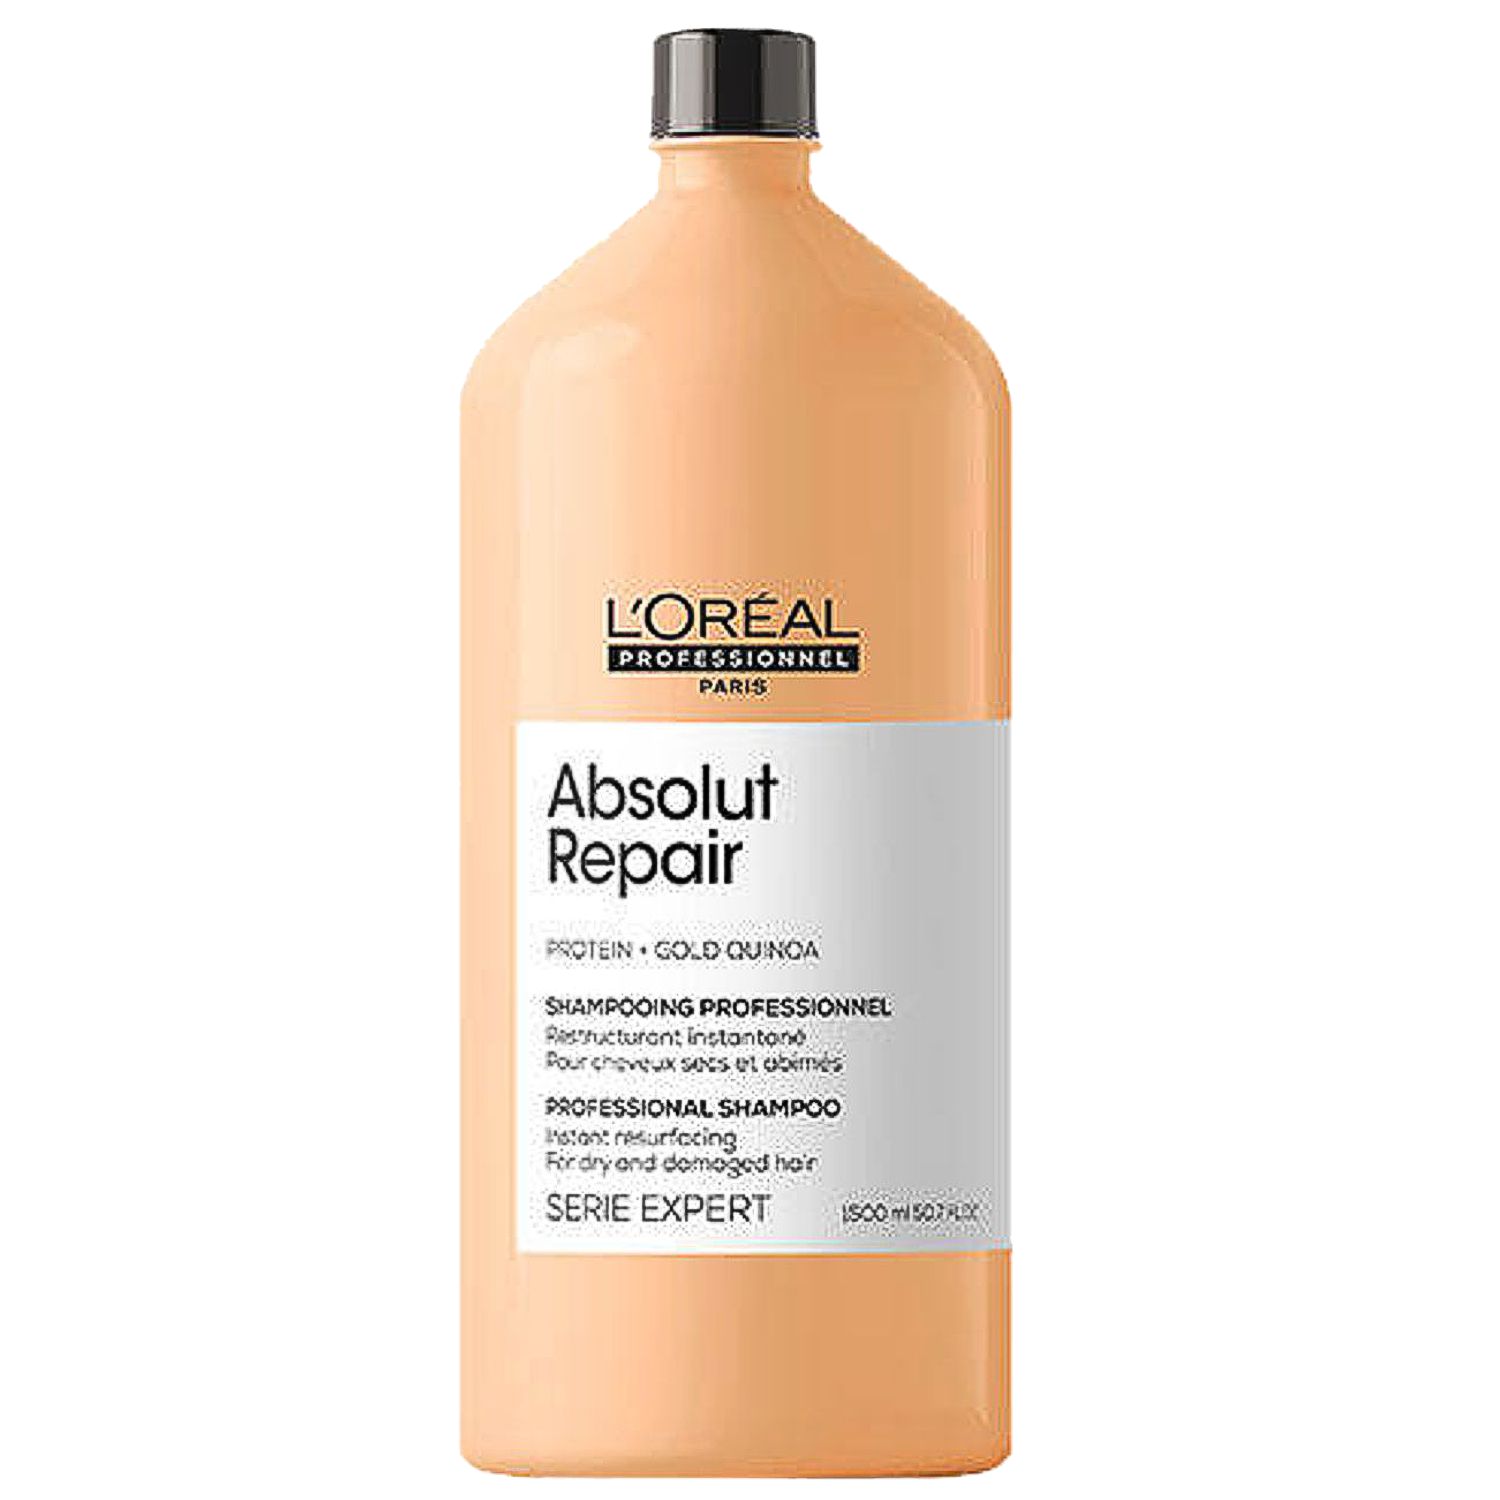 L'ORÉAL Expert ABSOLUT REPAIR Professional Shampoo 1,5 L